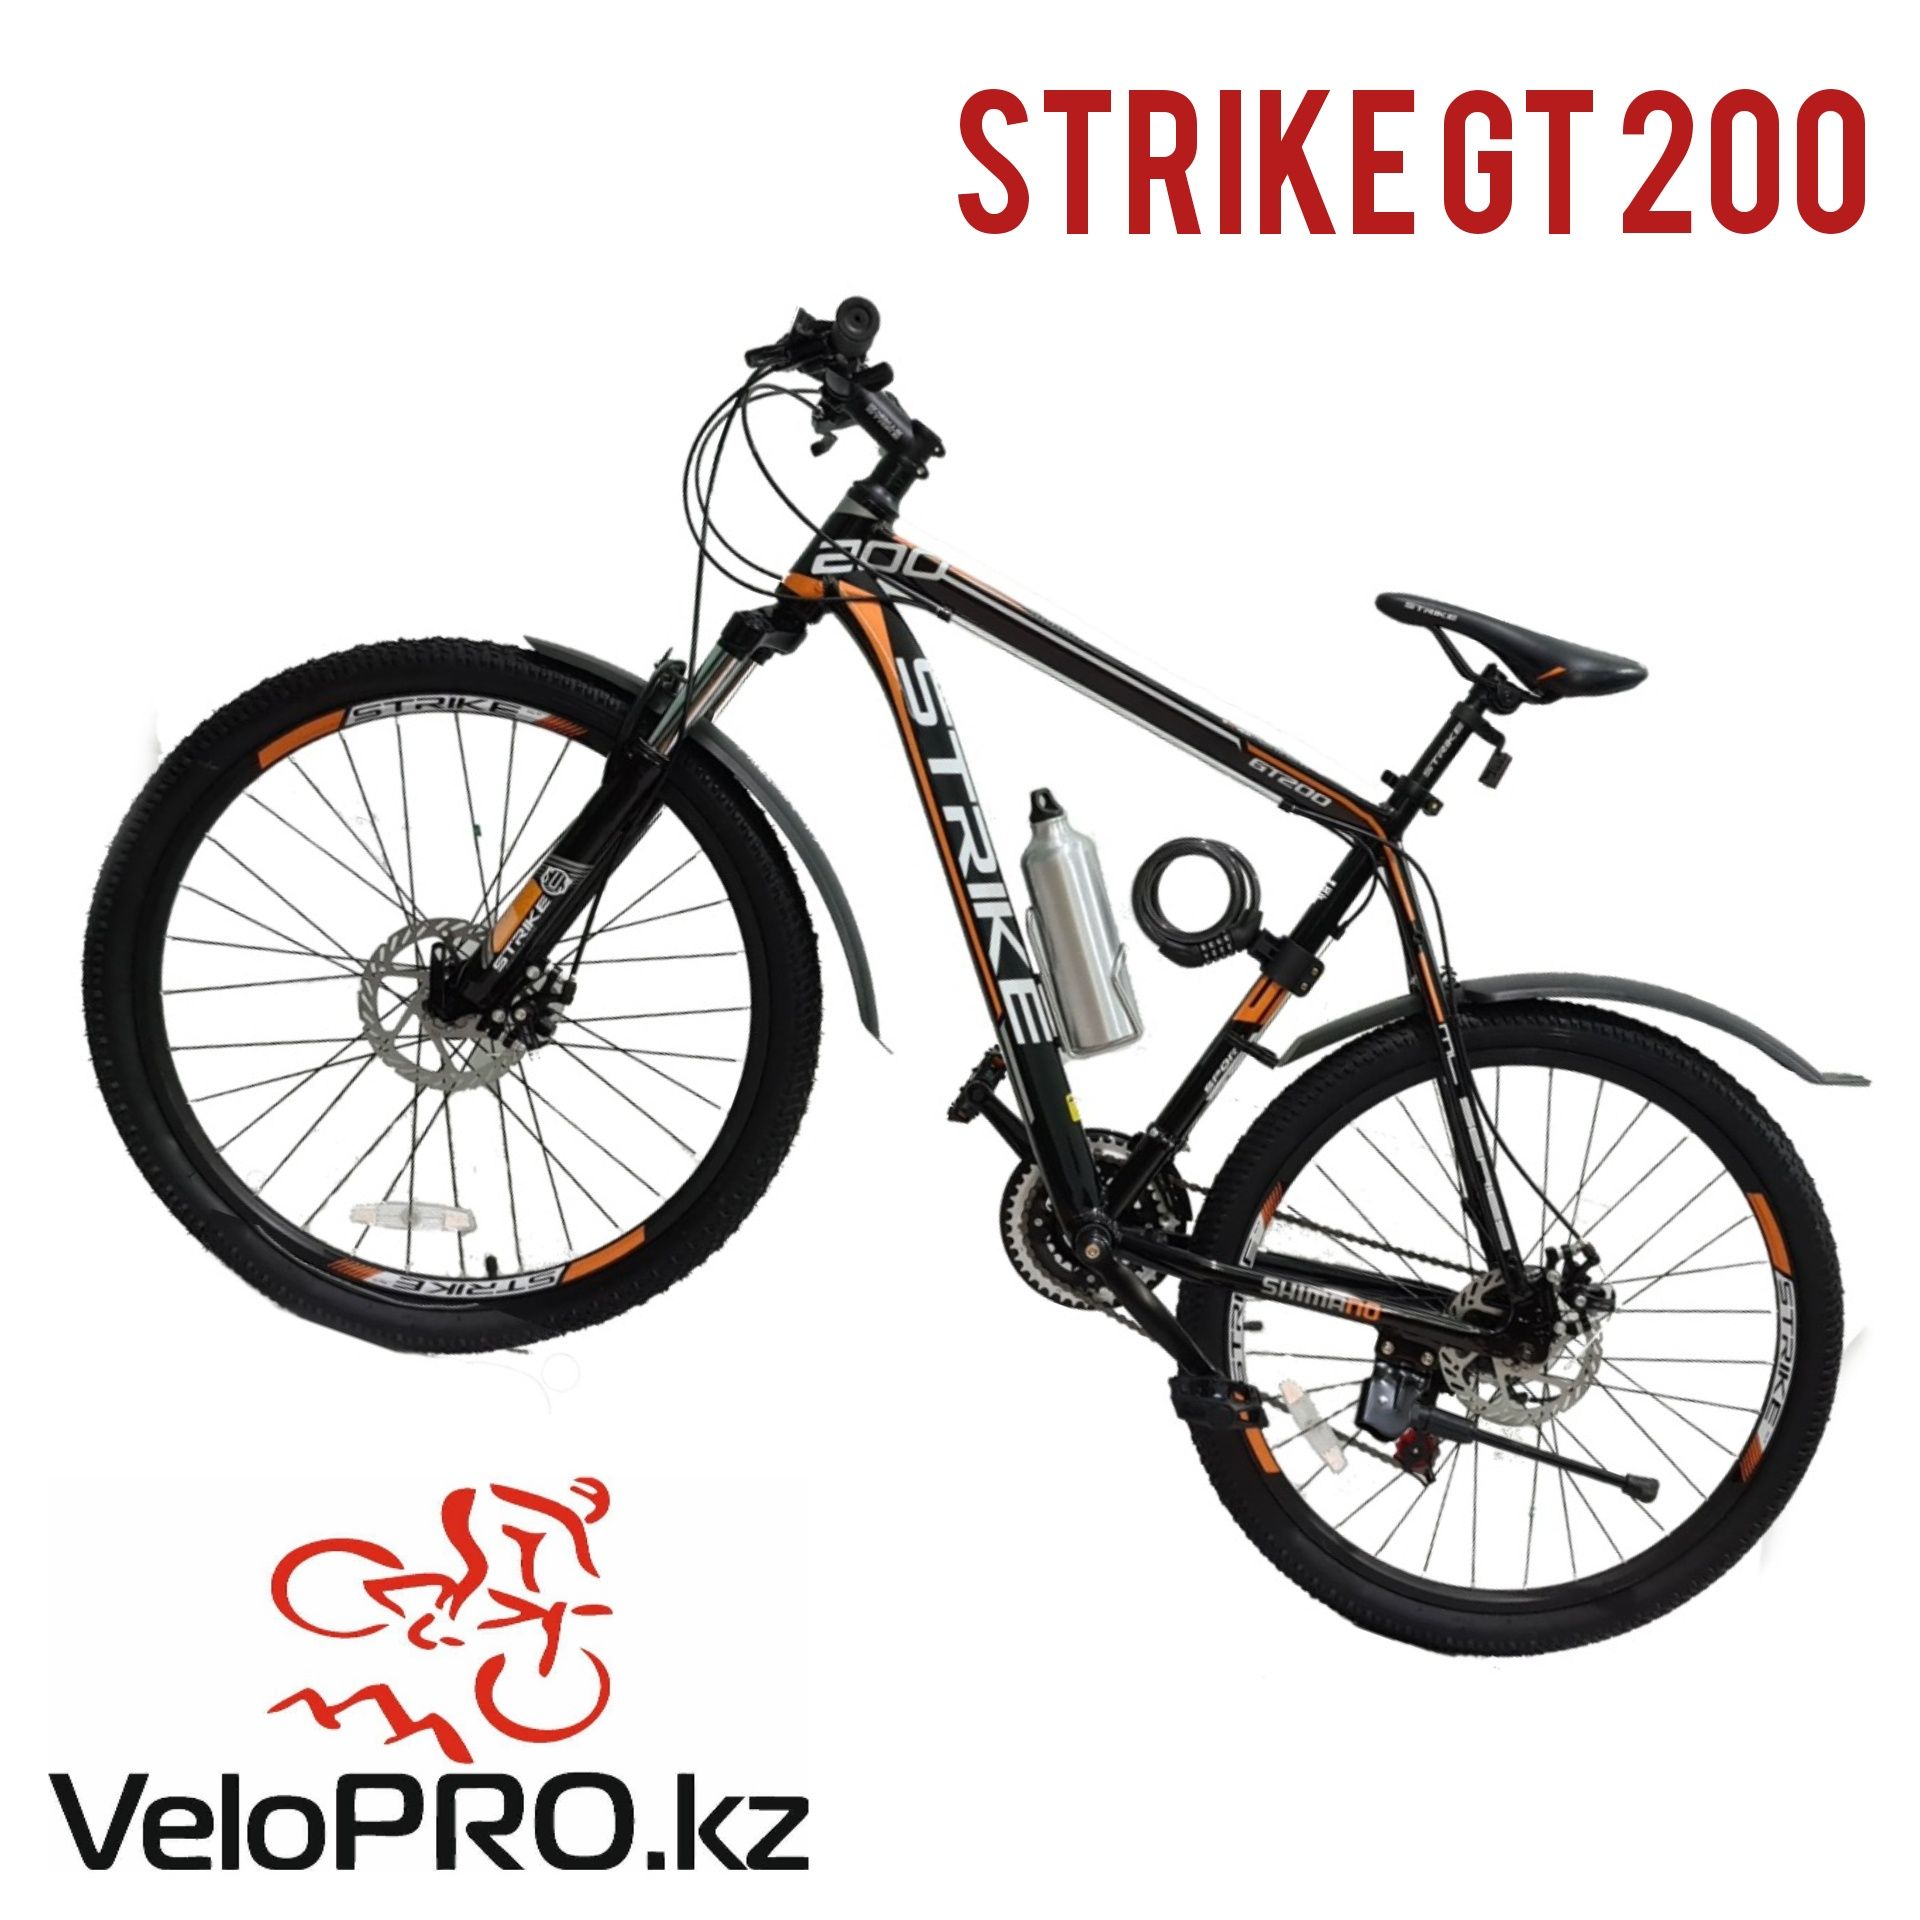 Горный велосипед Strike GT200. На рост 156-190см. Рассрочка.